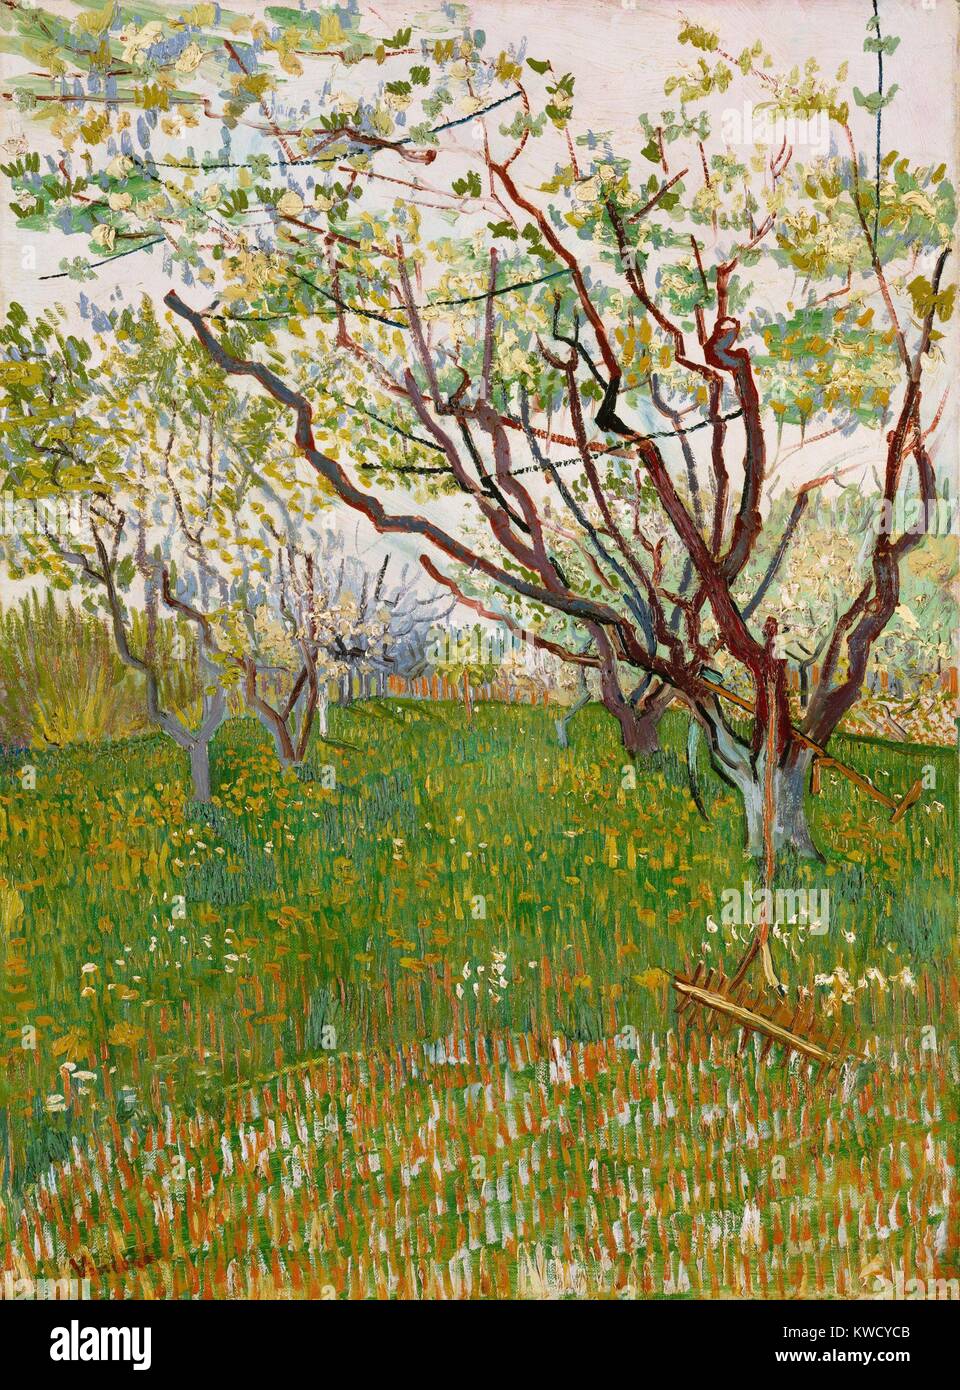 Le Verger en fleurs, par Vincent Van Gogh, 1888, Dutch Postimpressionnistes, huile sur toile. Le moment angulaire branches des arbres au printemps indique que l'influence d'estampes japonaises (BSLOC 2017 5 53) Banque D'Images